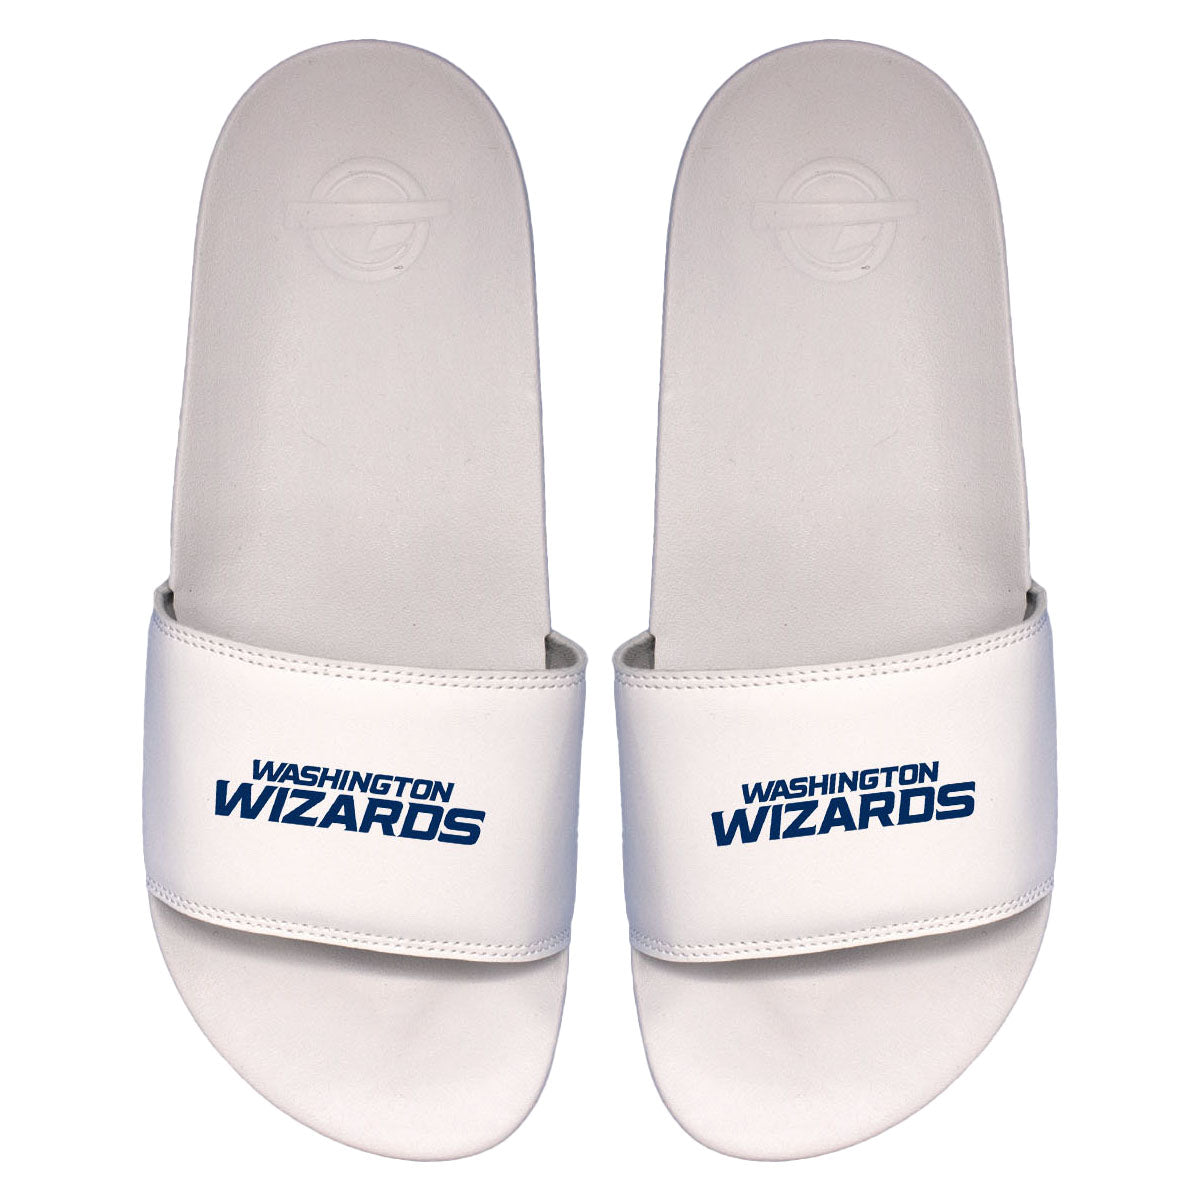 Wizards Wordmark Motto Slides